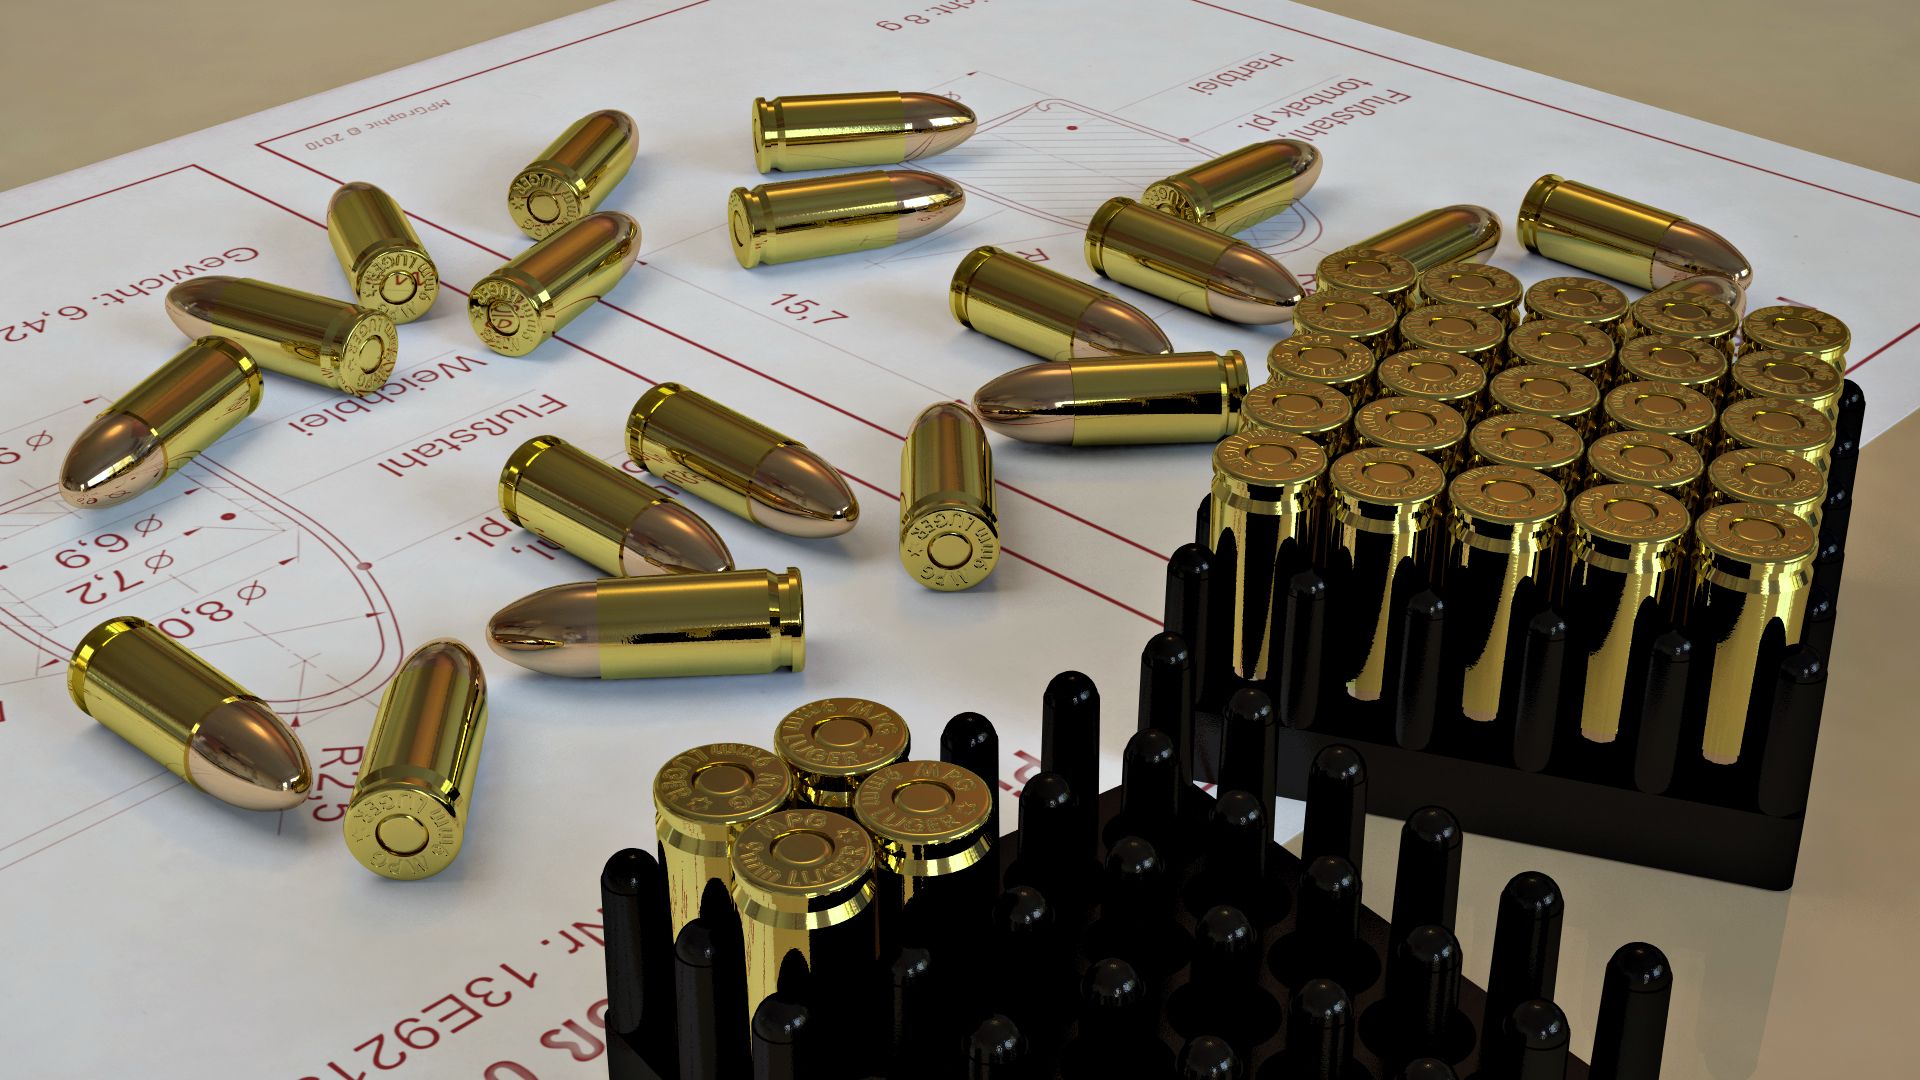 Afbeelding Kogels Militair 1920x1080 kogel patroon munitie